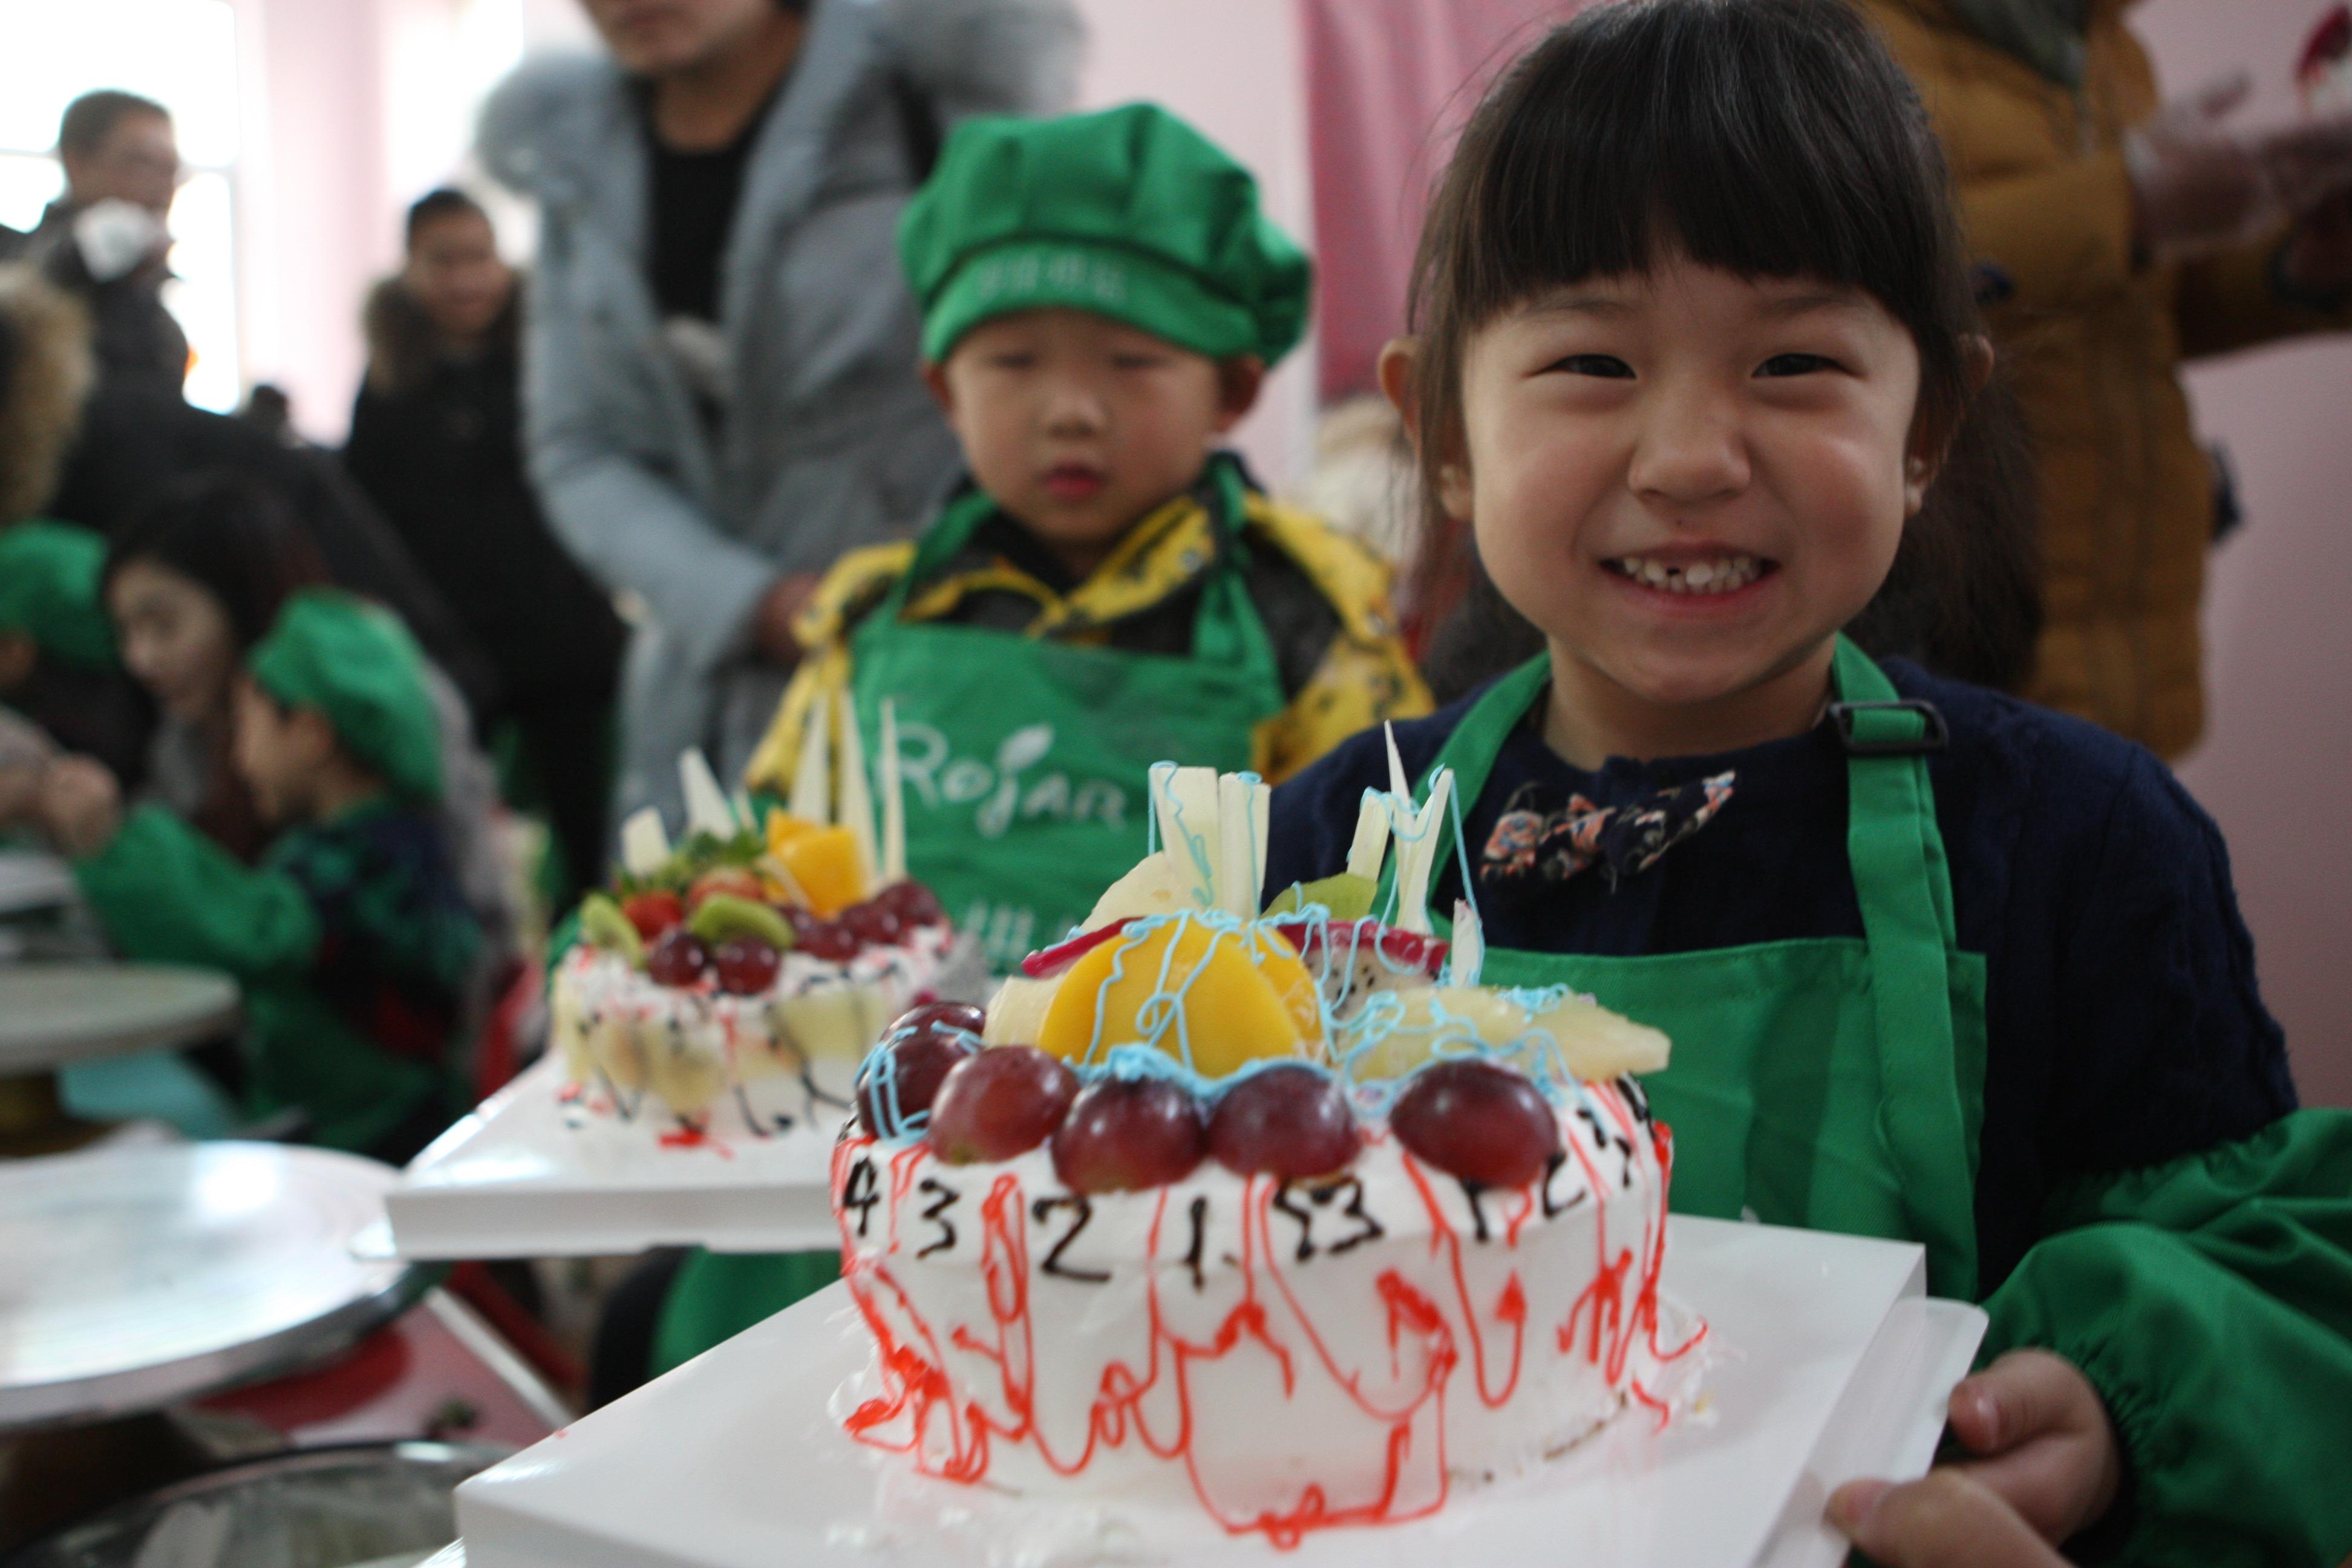 图片新闻:解放区孩子和家长一起制作蛋糕迎新年_通讯员之家_焦作网